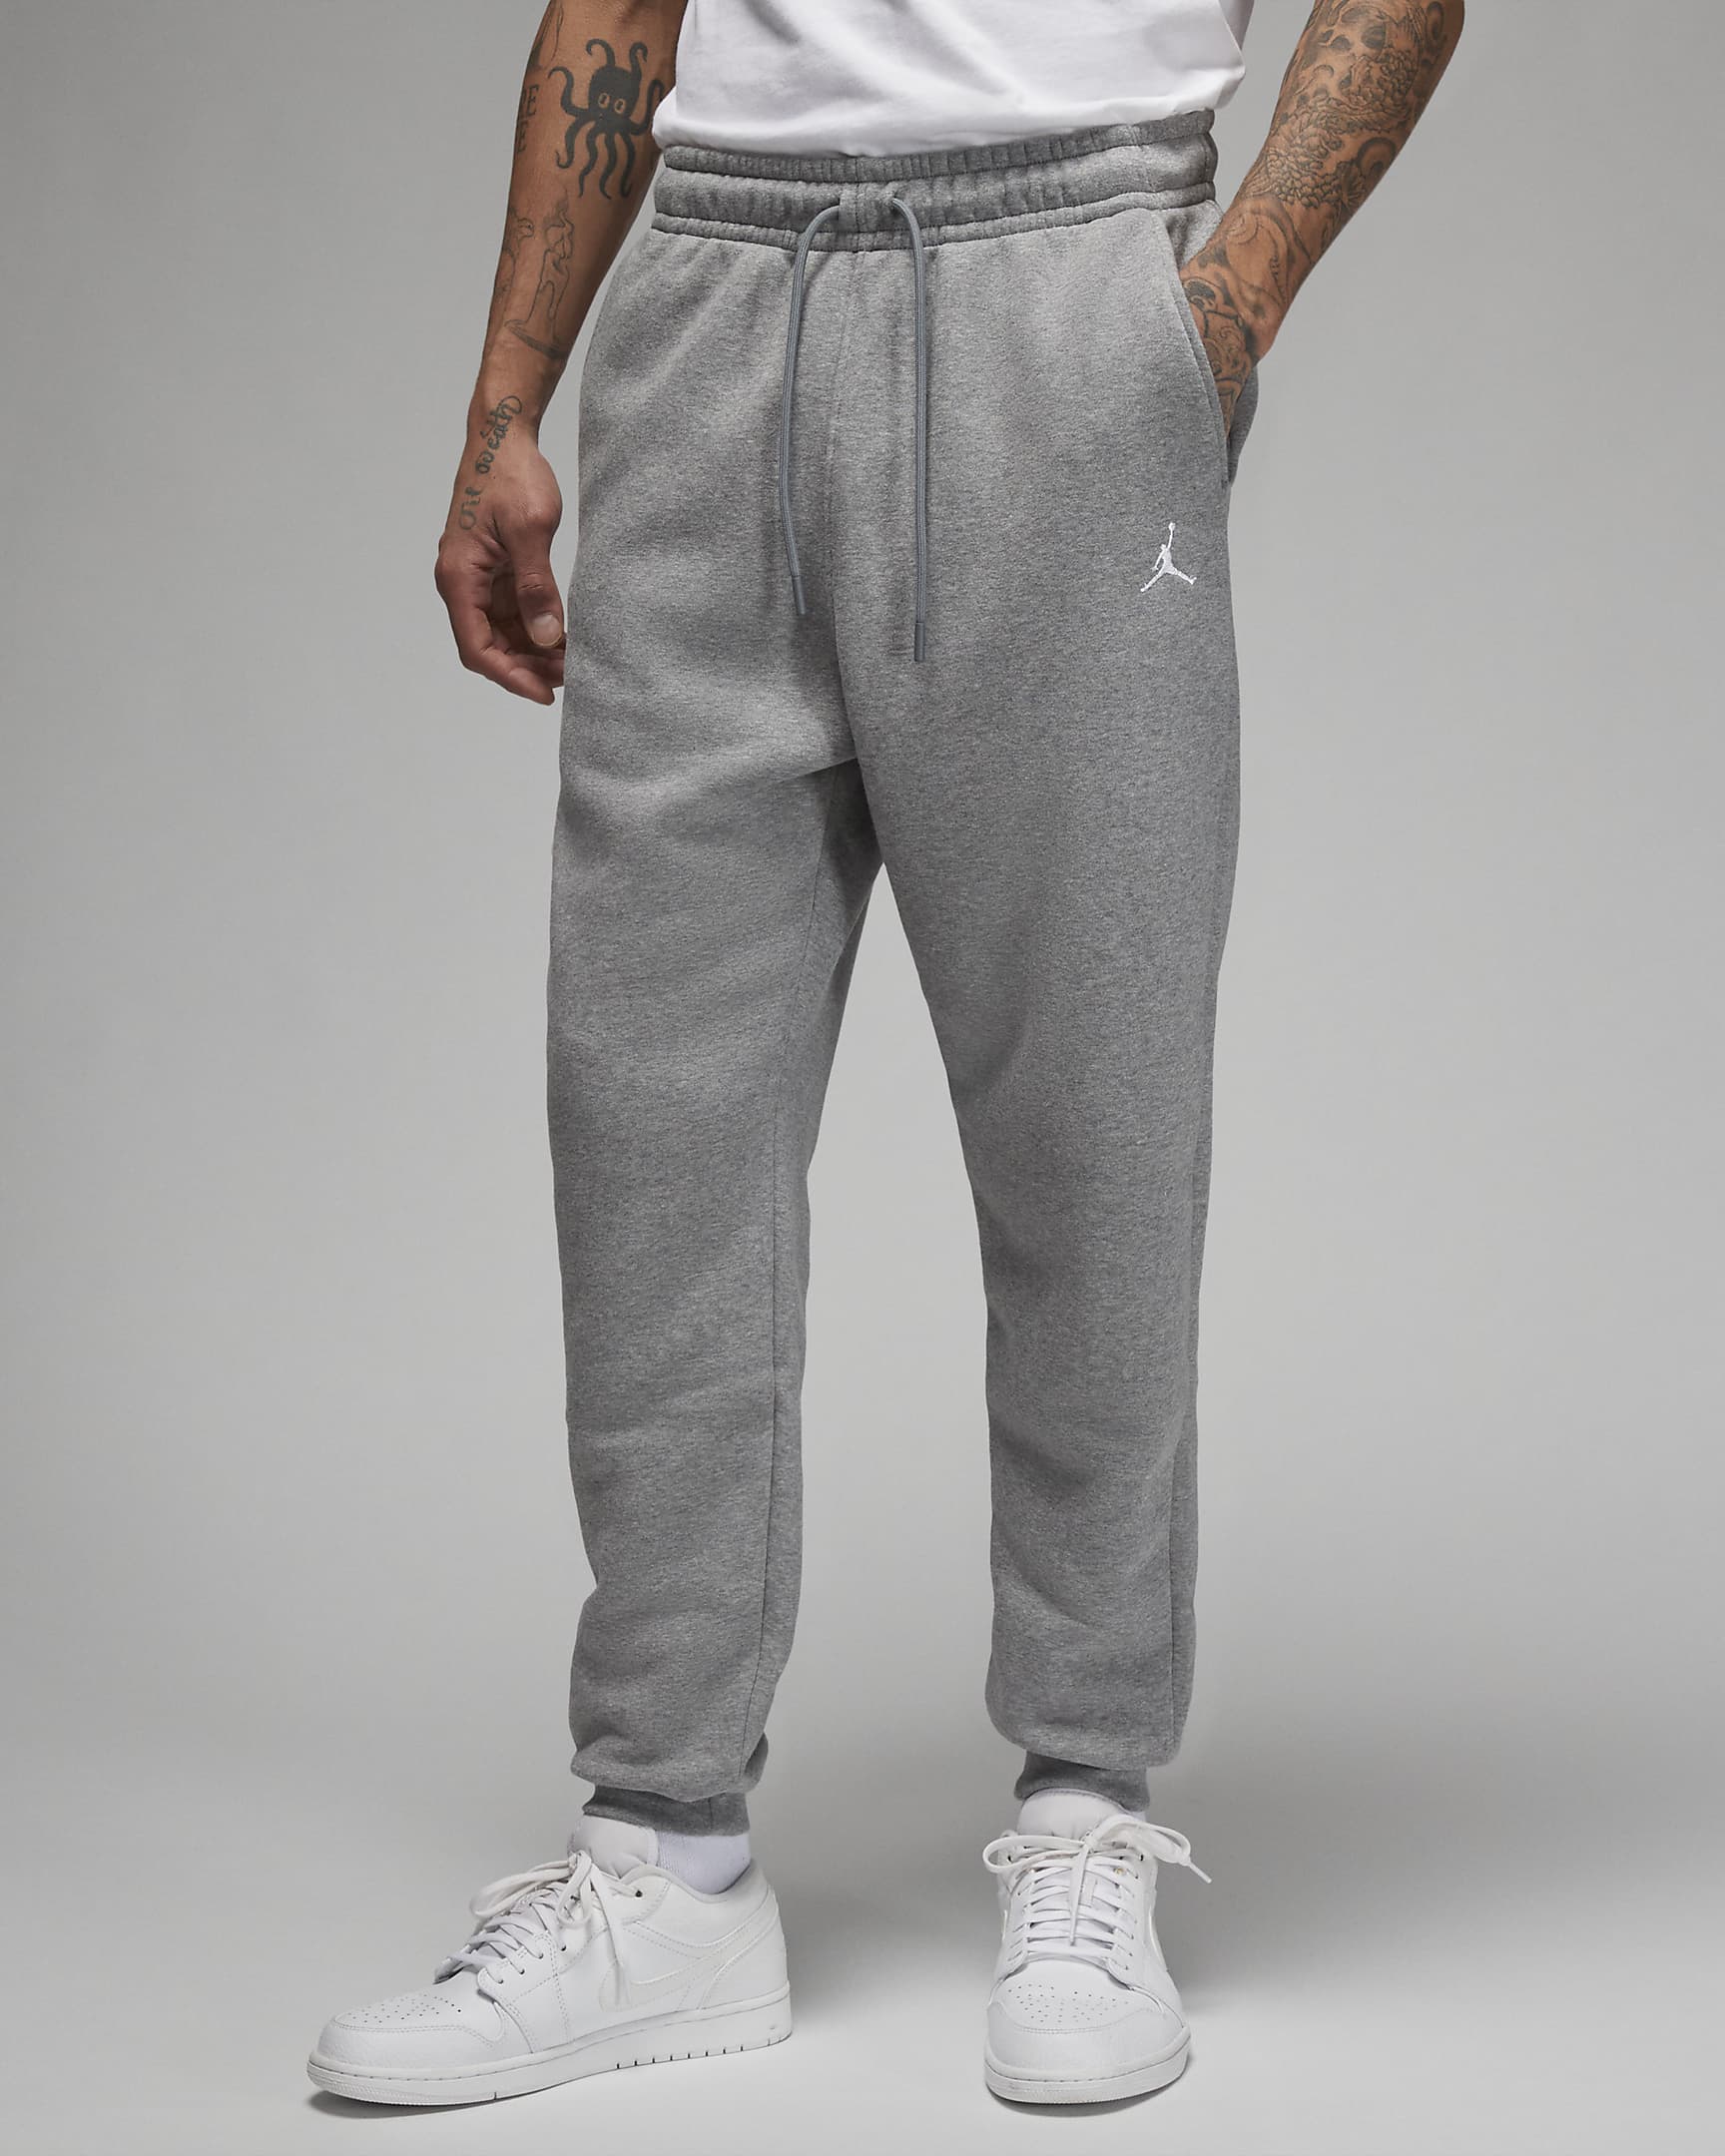 Nike Air Jordan sweatpants